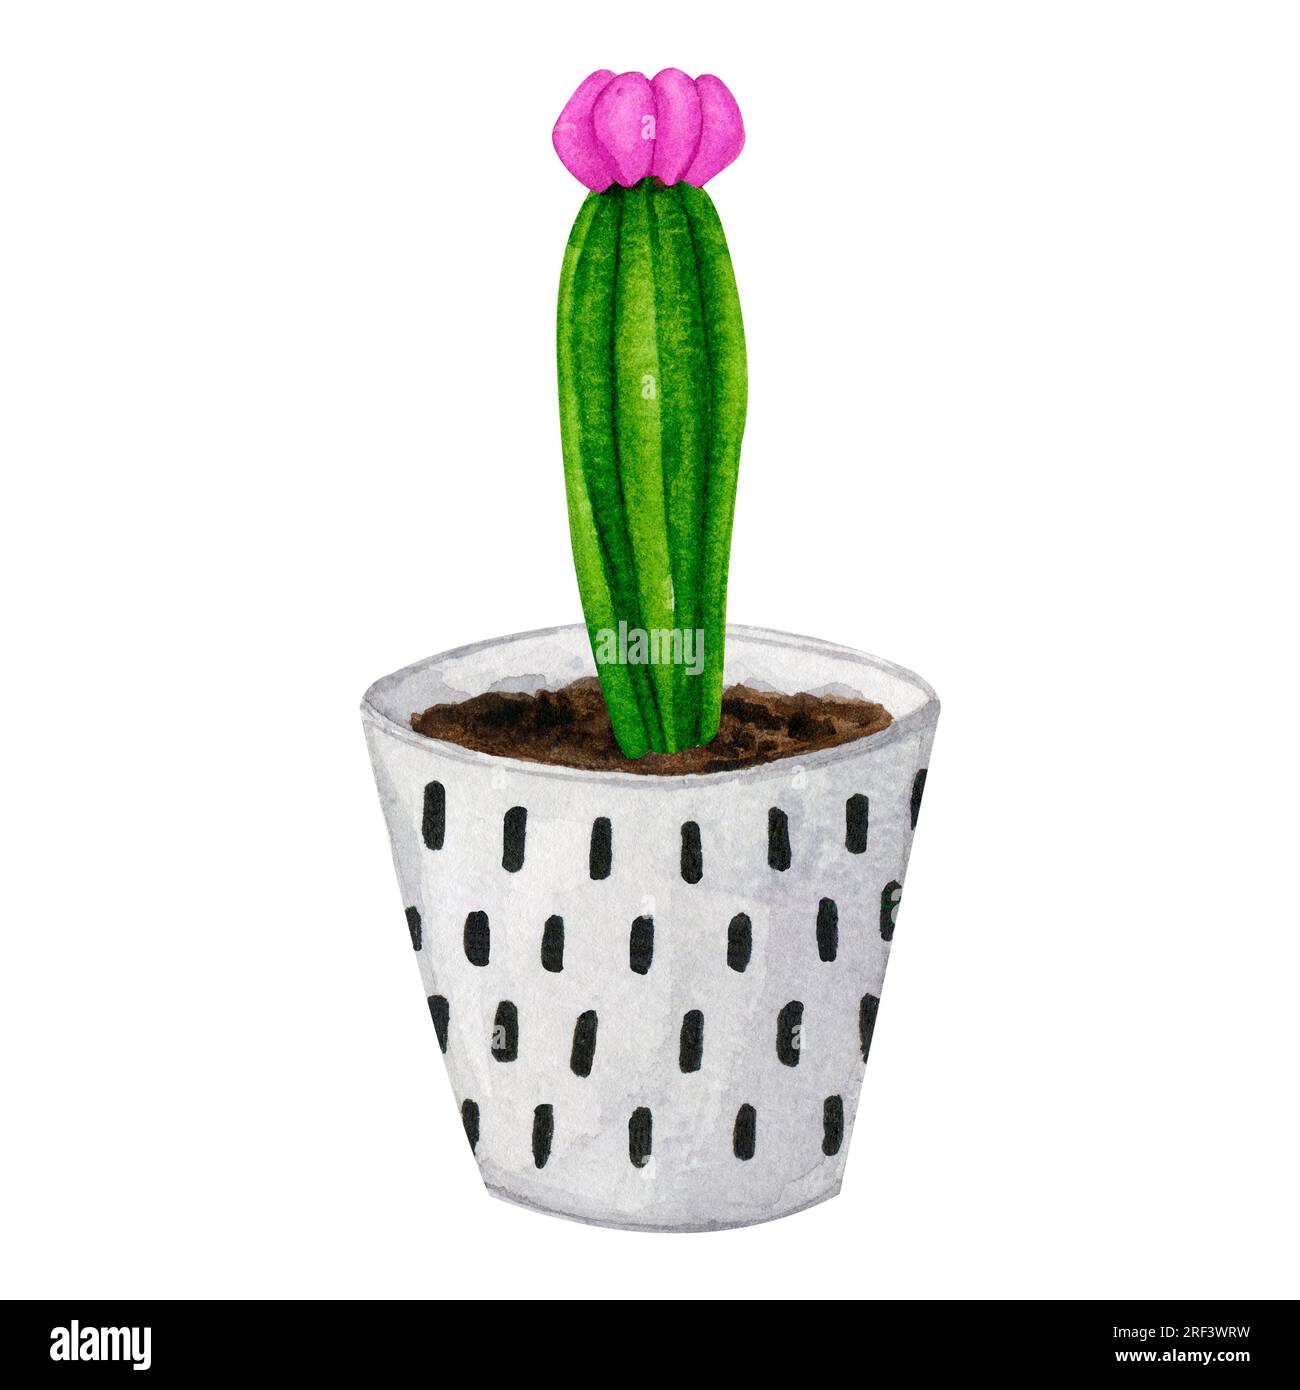 Cactus dans un pot en céramique. Boho, style scandinave. Clipart aquarelle pour la conception de cartes, logos, papeterie, impression, tissu, textile pour la maison. Banque D'Images